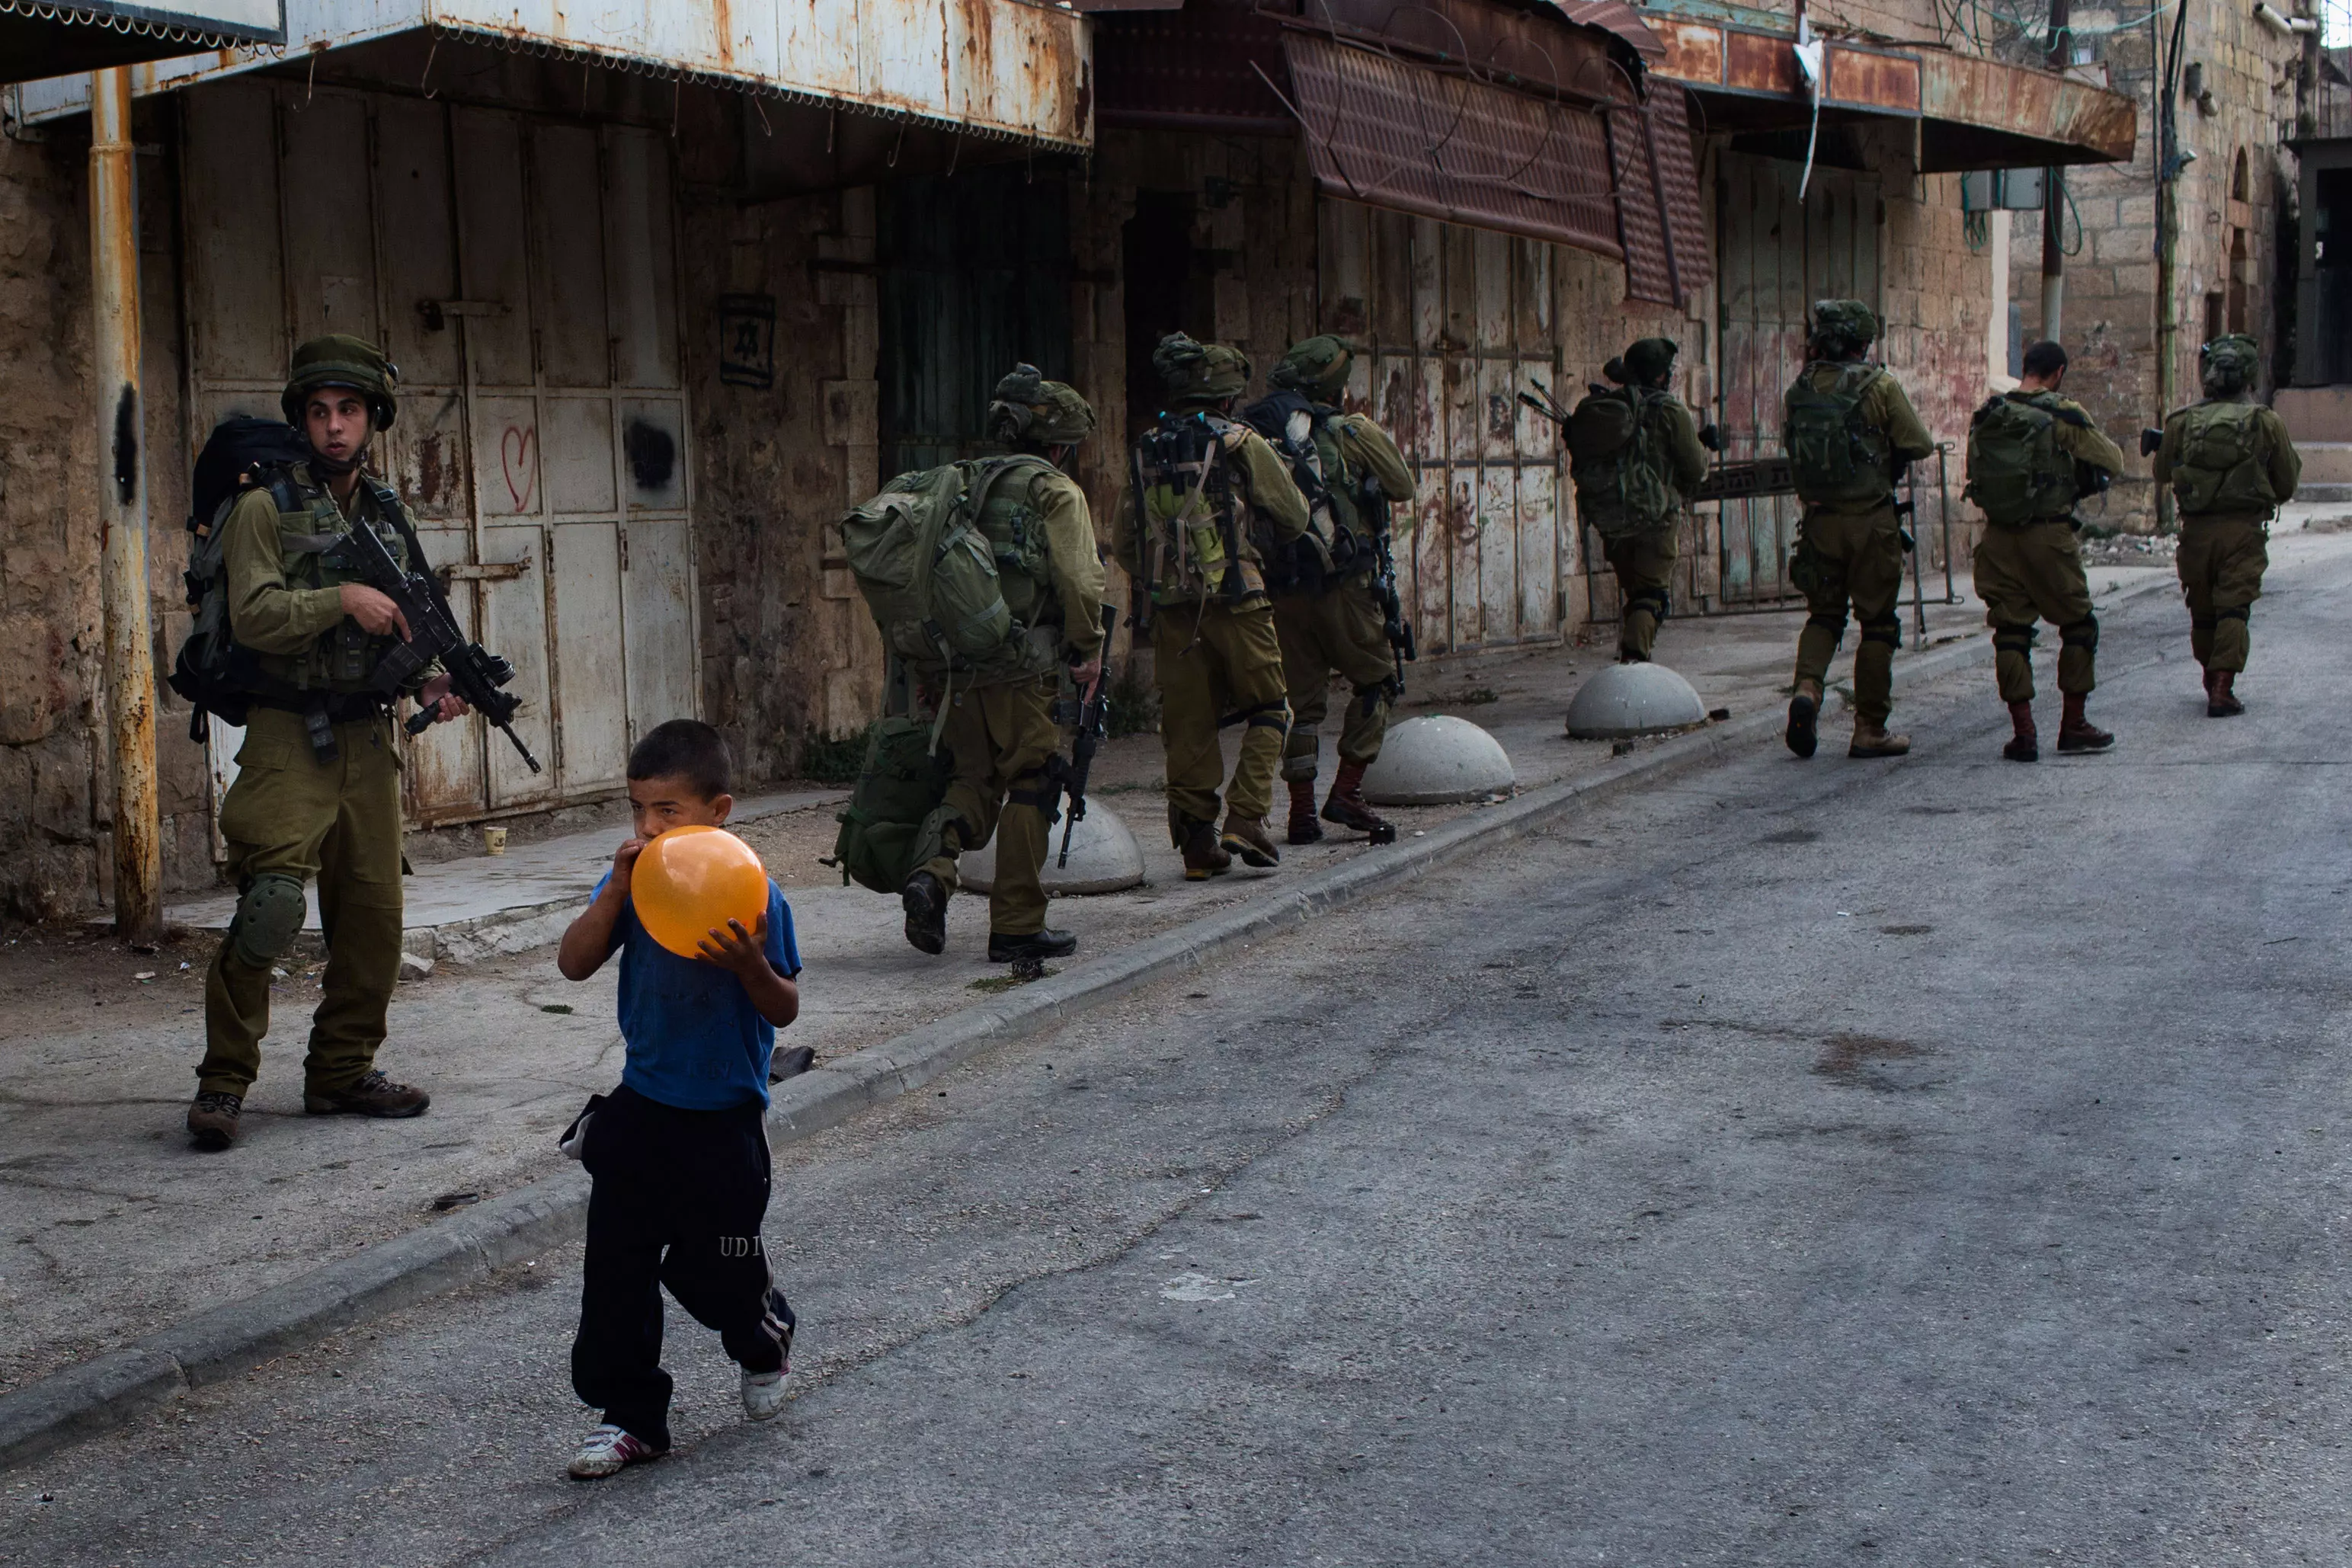 אלפי בתים נטושים, רחובות ריקים מפלסטינים. חיילים וילד פלסטיני בחברון